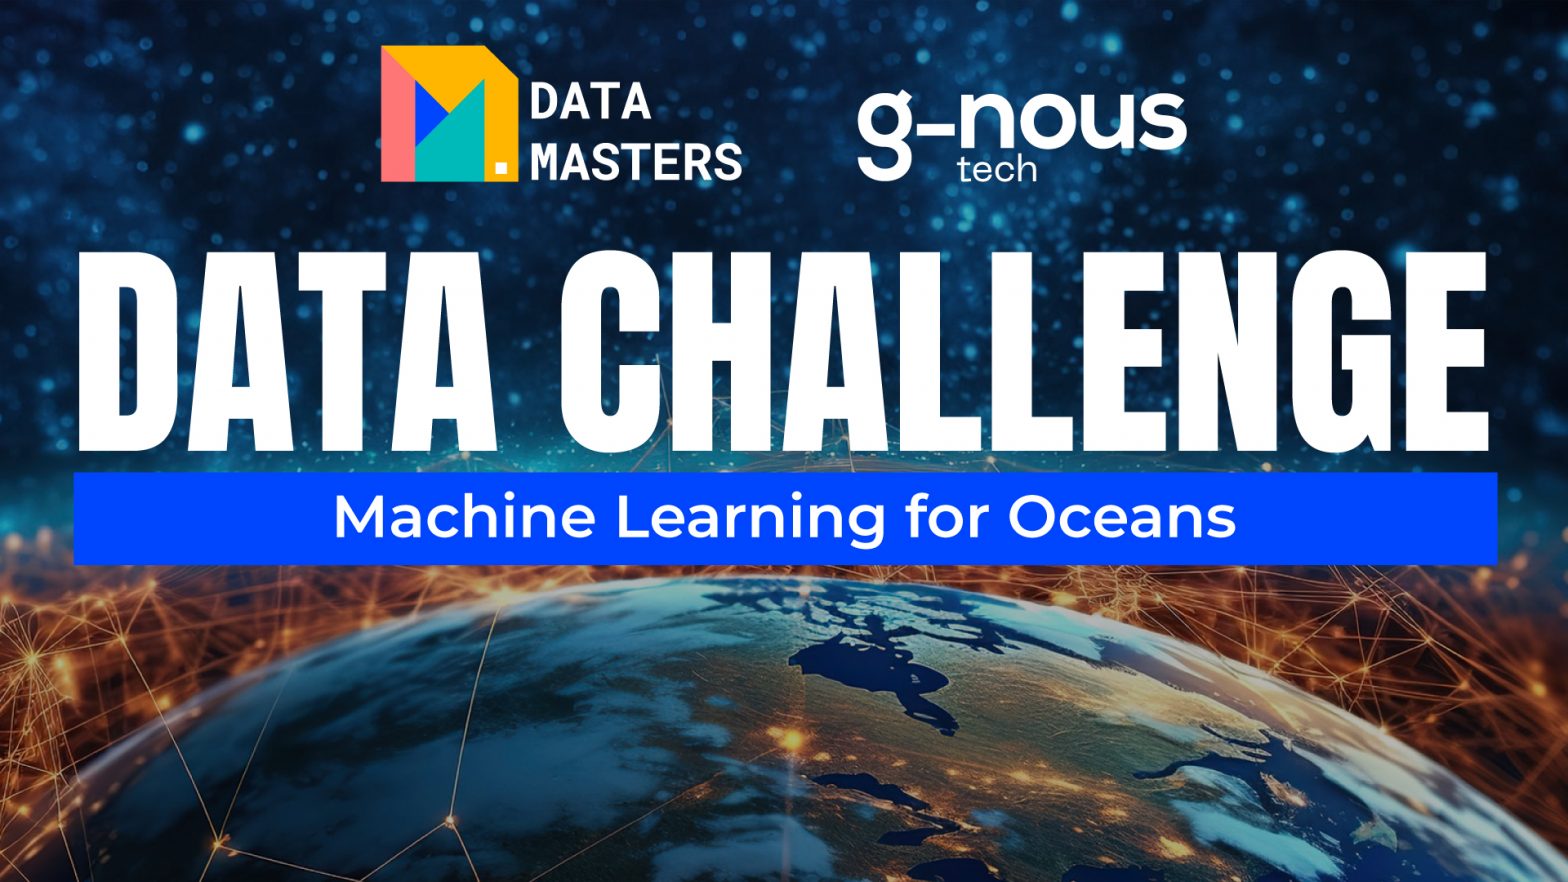 Immagine promozionale della Data Challenge, con i loghi di Data Masters e G-nous Tech, che evidenzia l'impegno nell'utilizzo del machine learning per la conservazione degli oceani